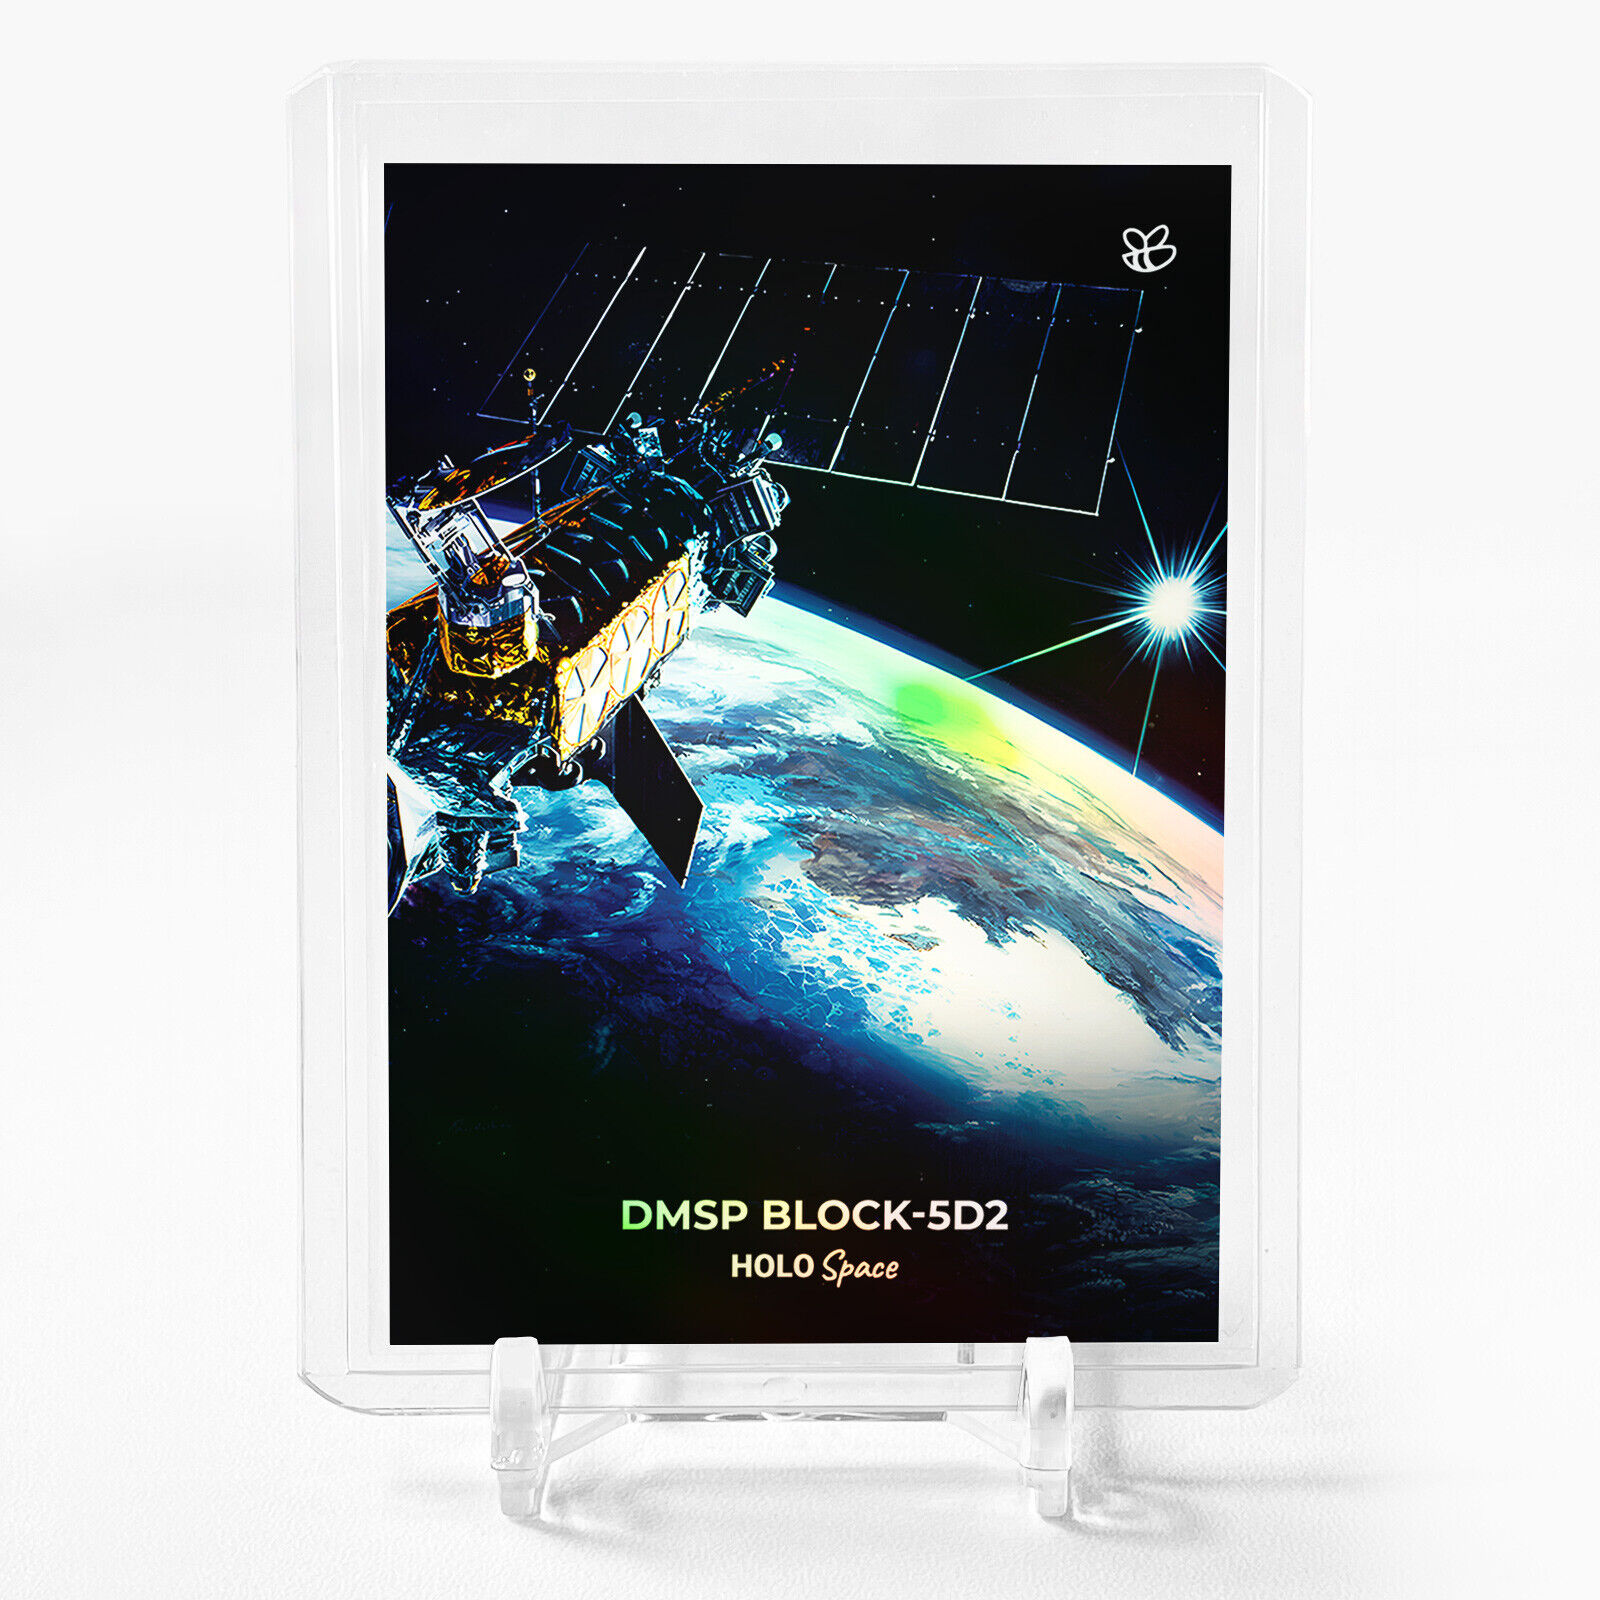 DMSP BLOCK-5D2 Card GleeBeeCo #DMDF Defense Meteorological Satellite Program